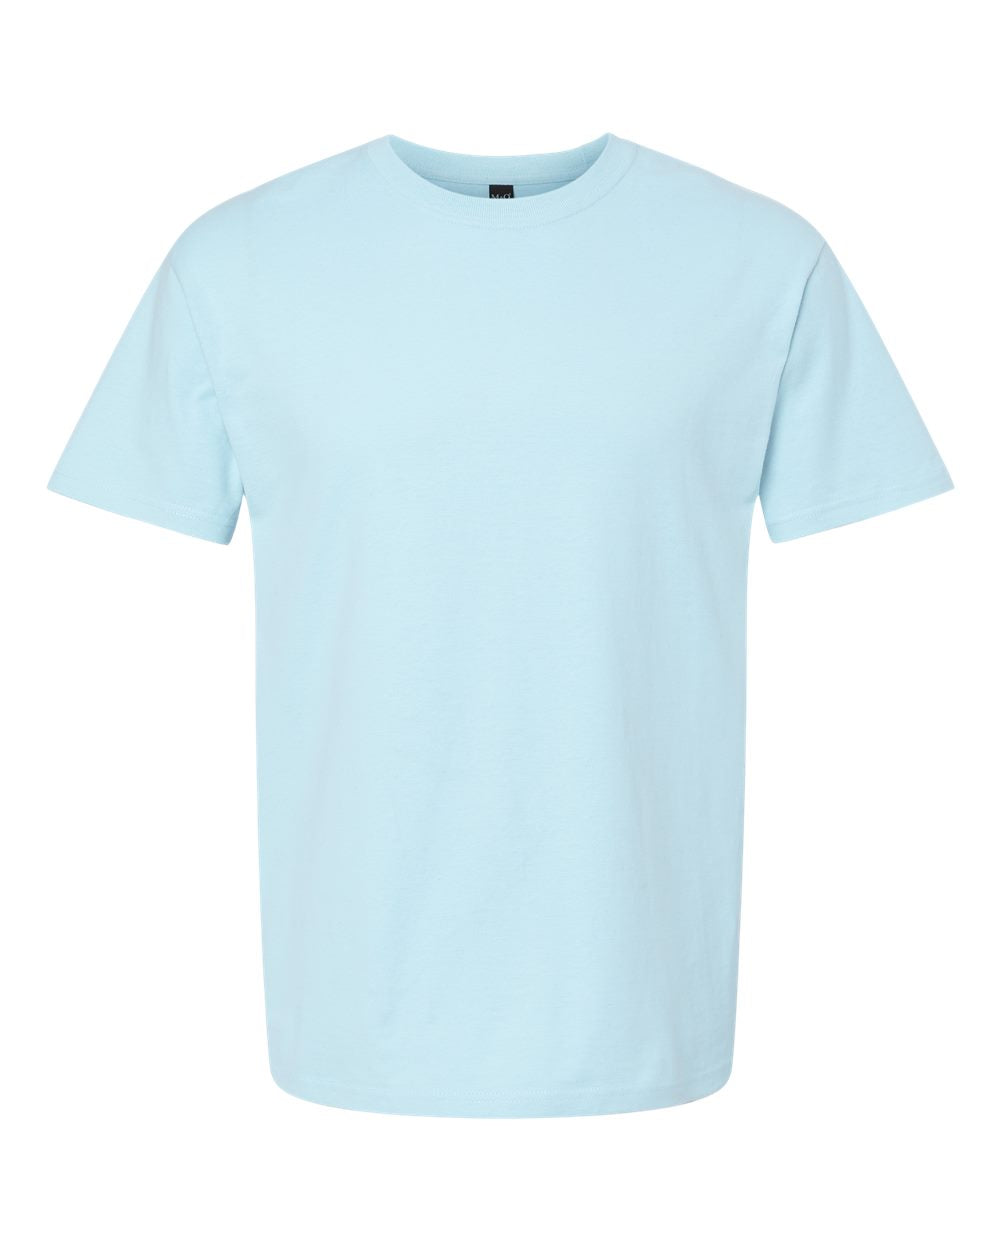 M&O Ring-Spun T-Shirt 5500 #color_Light Blue